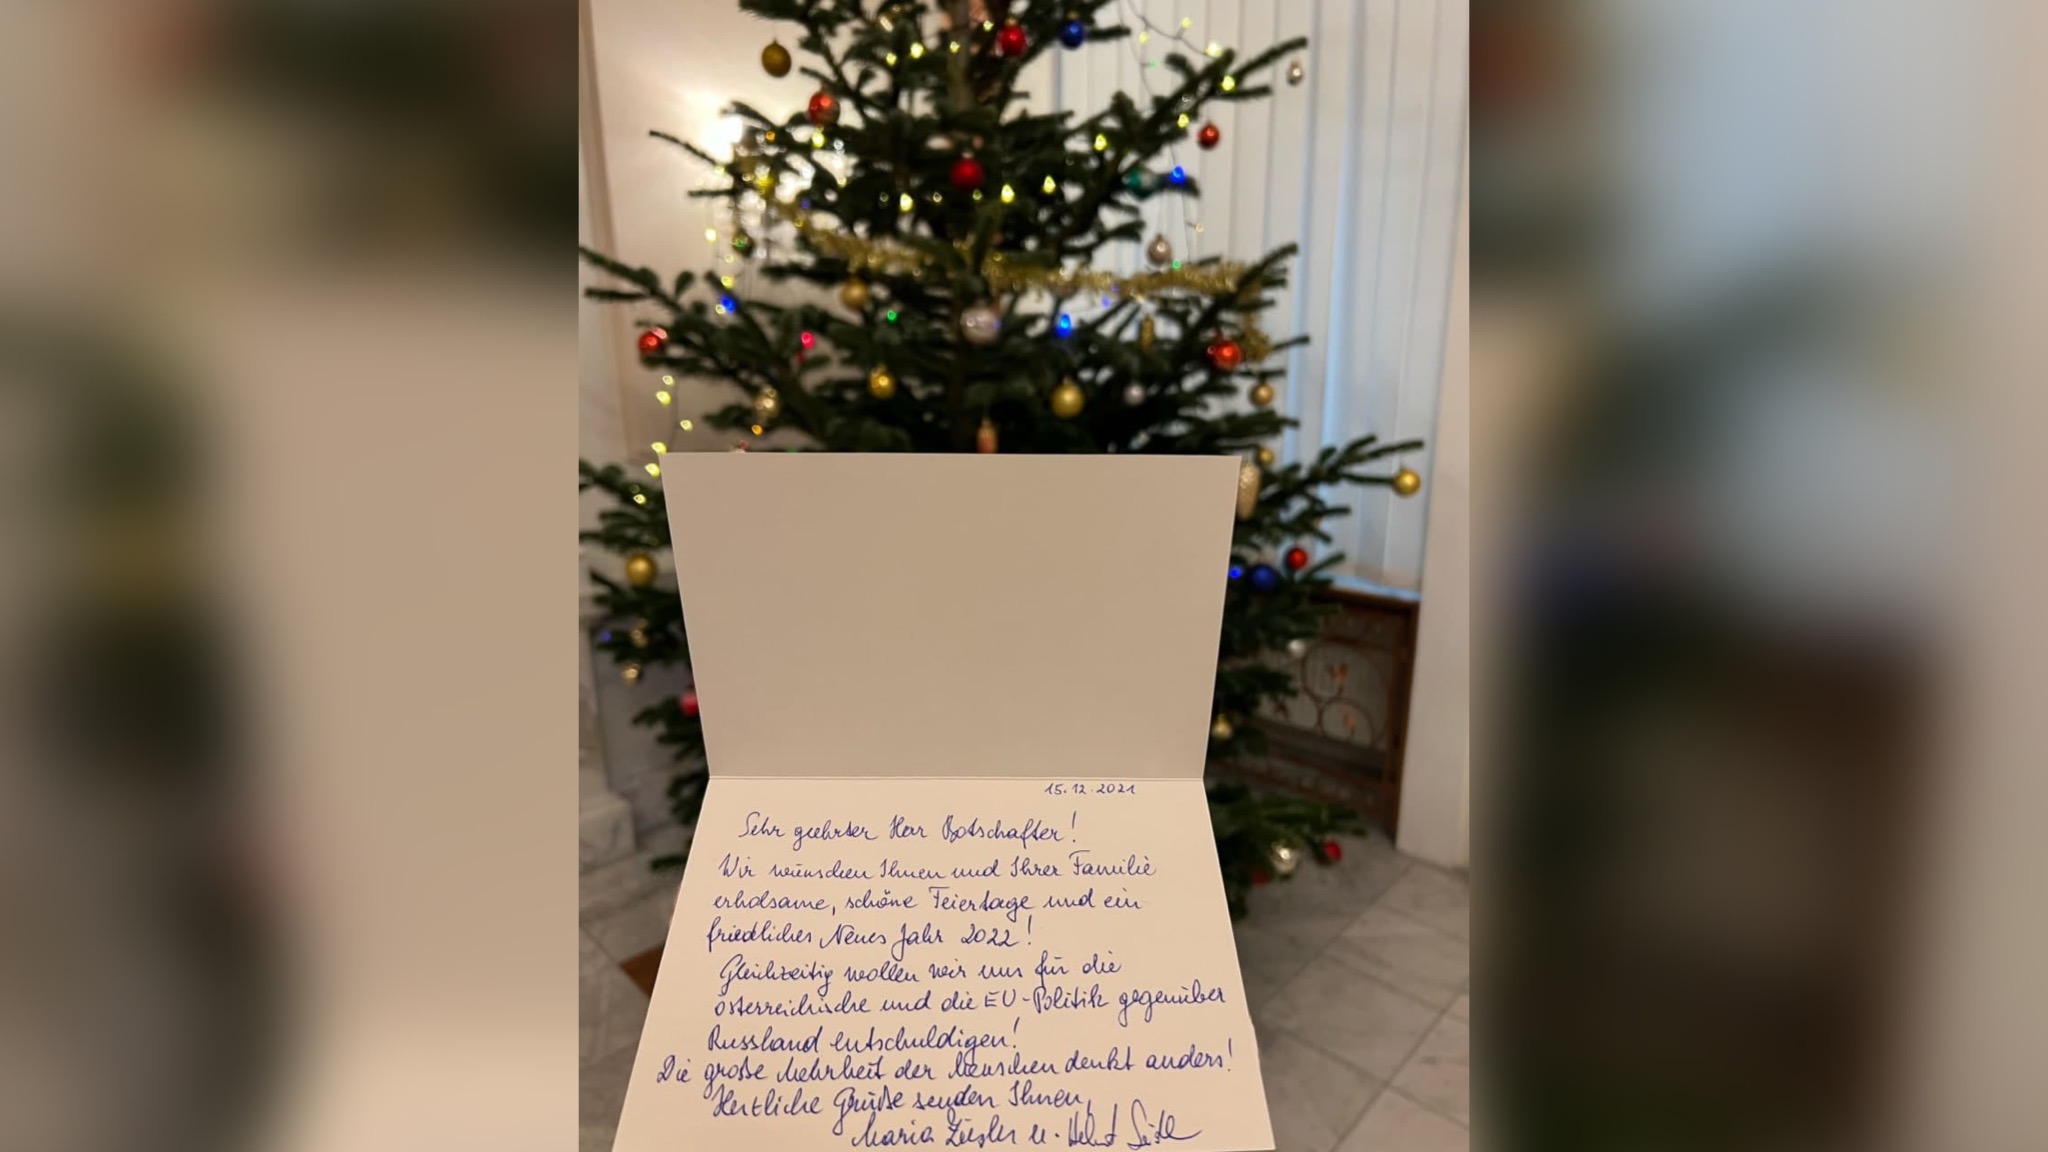 Письмо с извинениями от австрийцев. © Telegram / Посольство РФ в Австрии